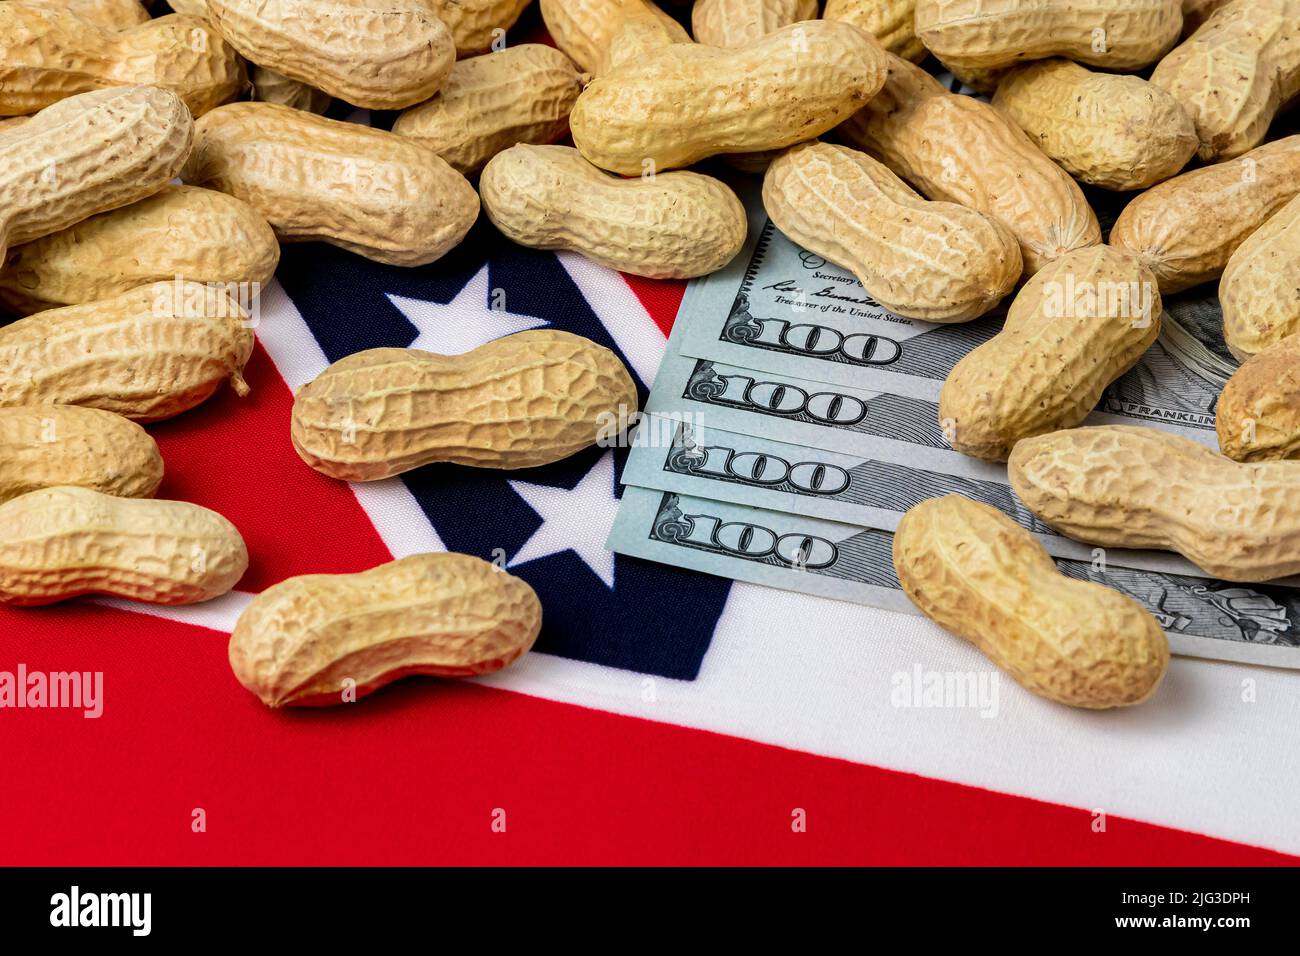 Cacahuetes en concha en la bandera de Mississippi con billetes de 100 dólares. Concepto de cultivo de cacahuetes, comercio, aranceles y precios de mercado. Foto de stock